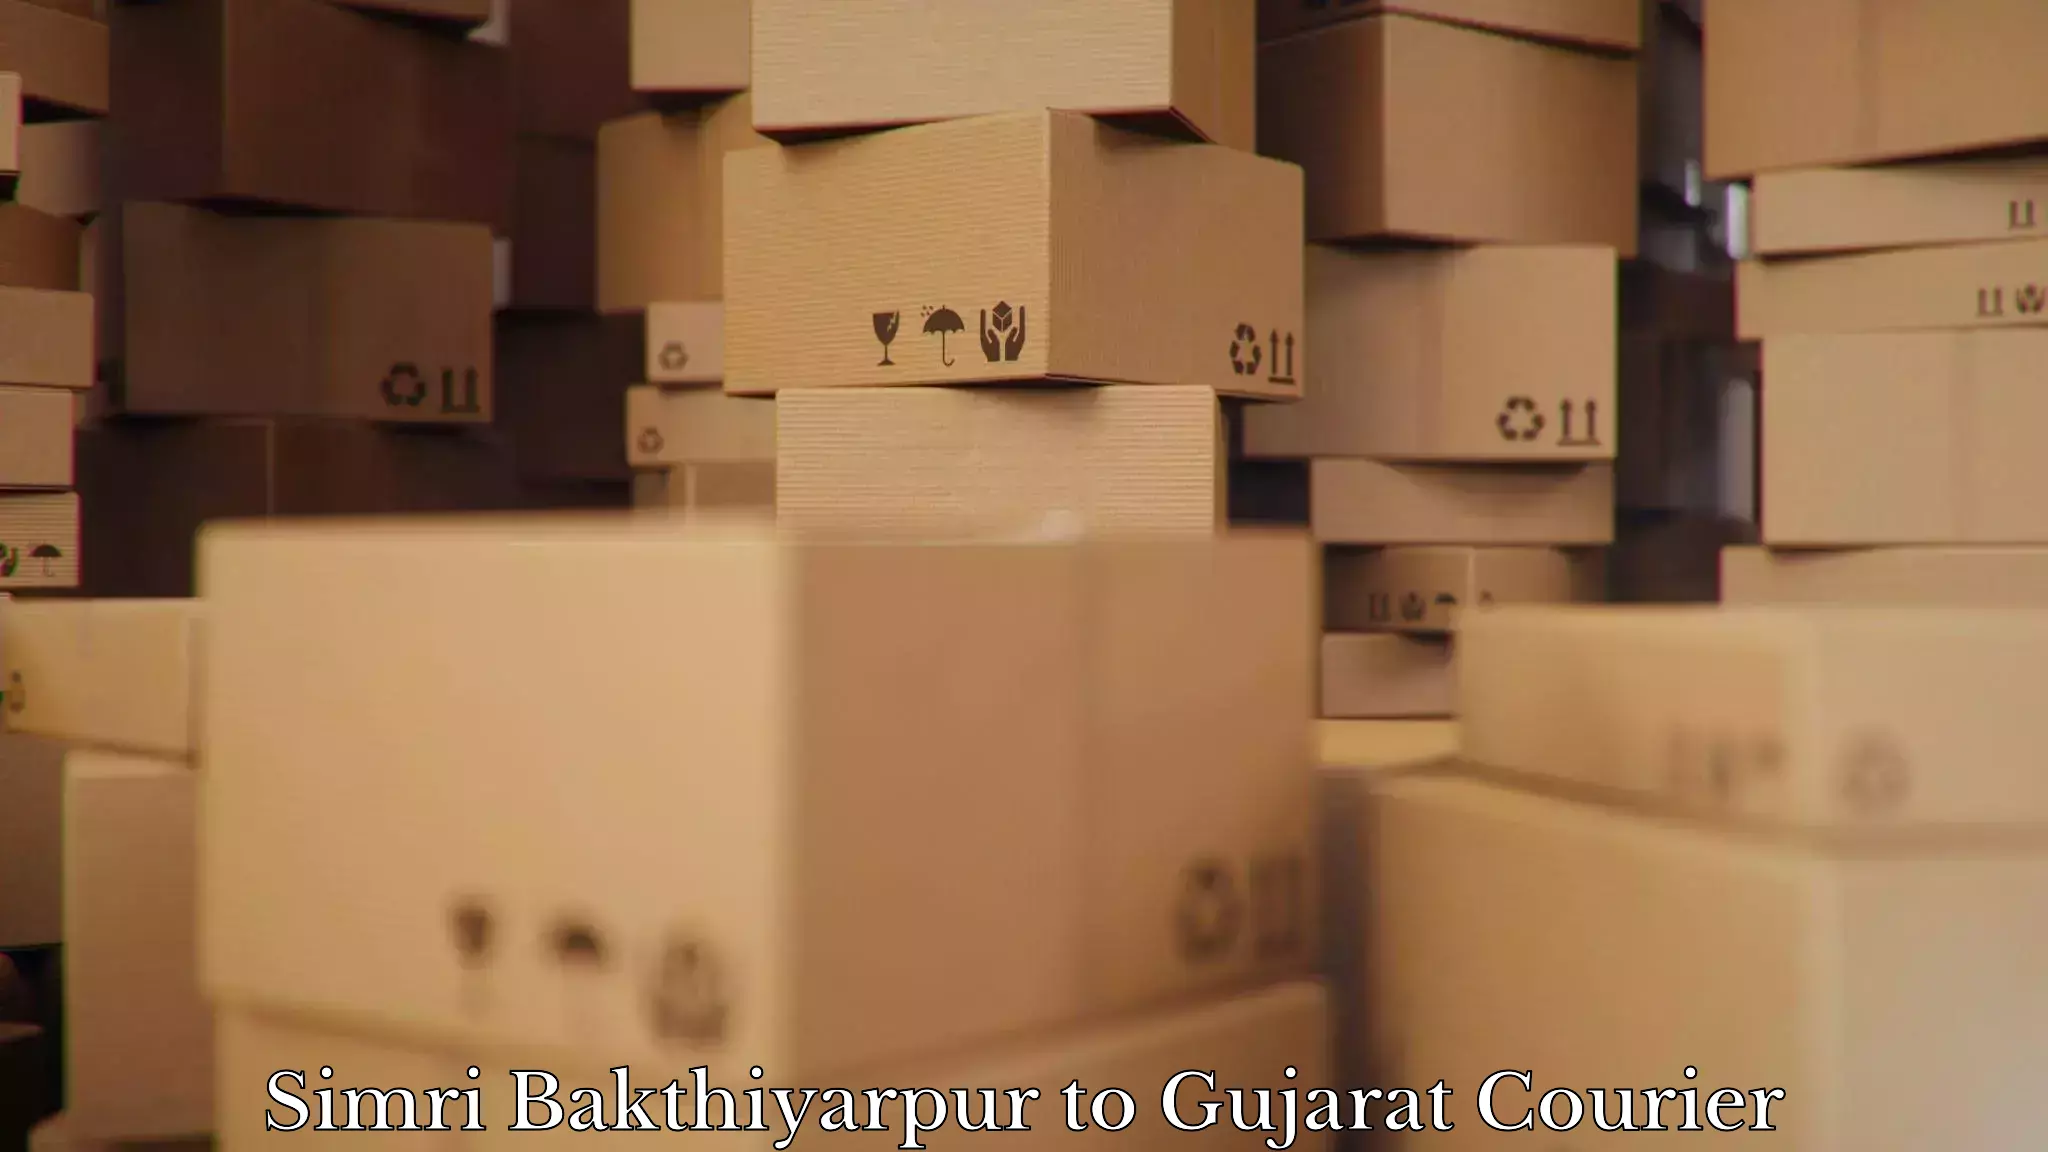 Furniture moving and handling Simri Bakthiyarpur to Gujarat